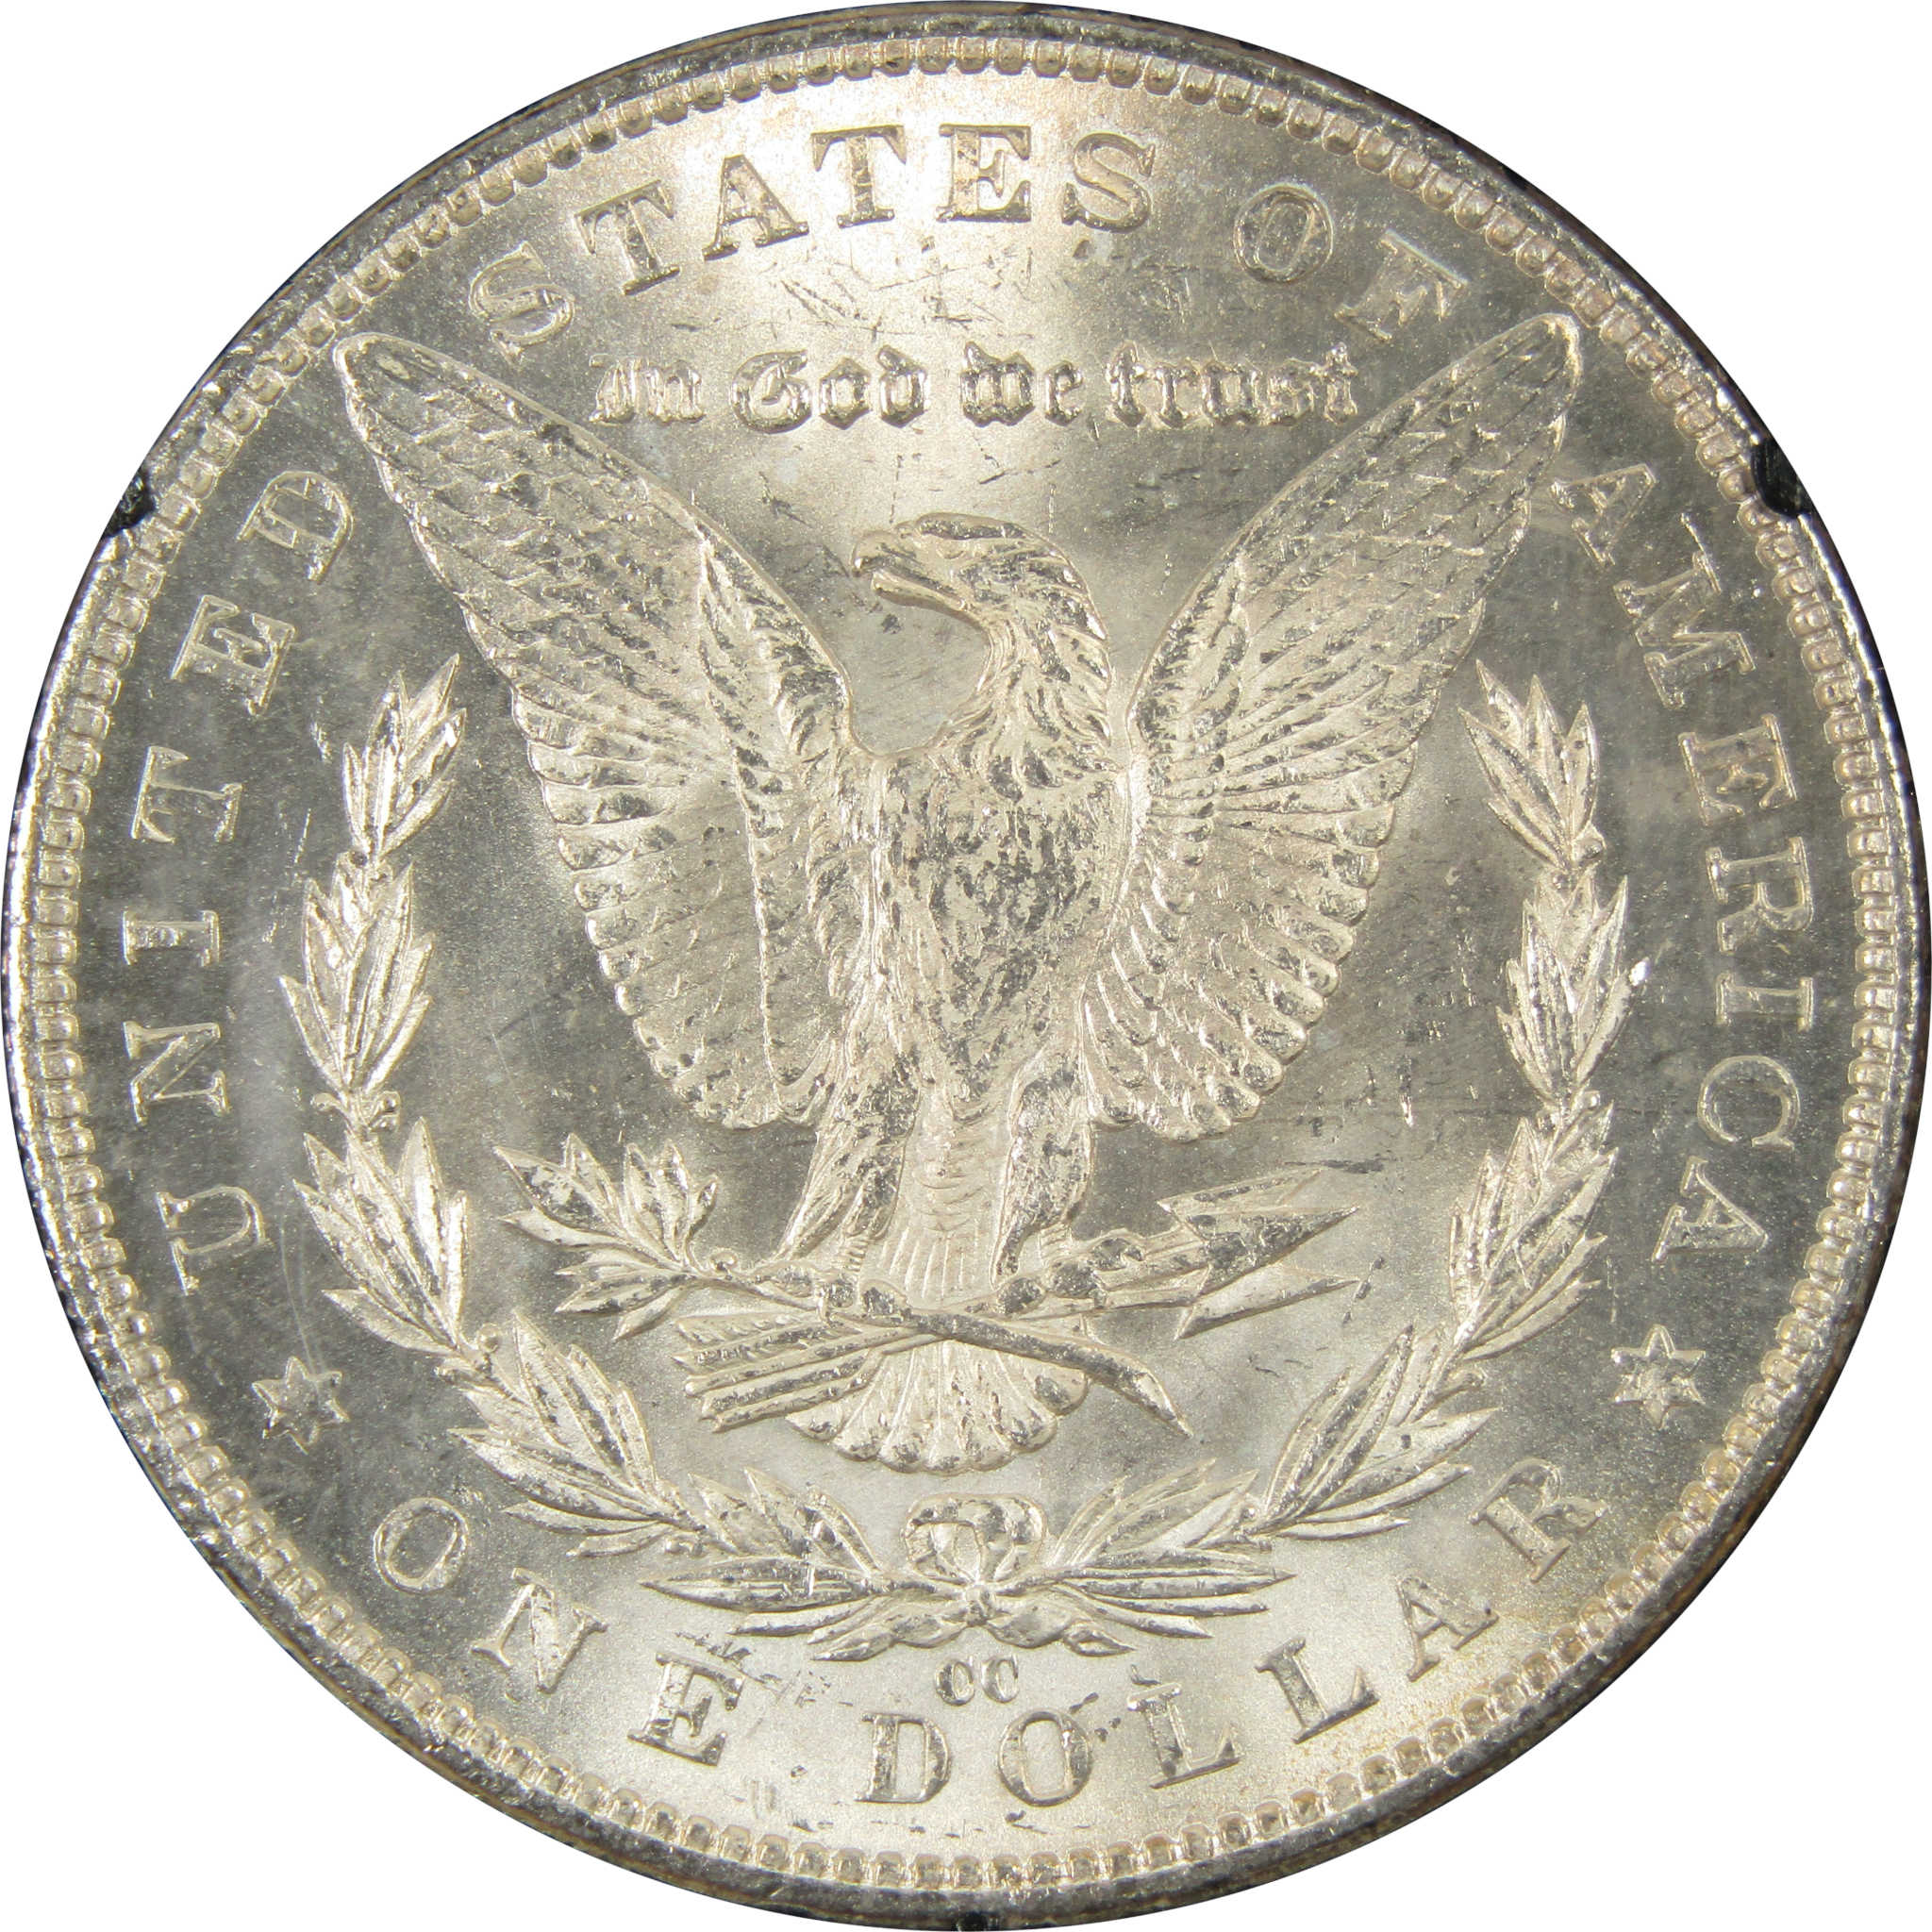 1883 CC GSA Morgan Dollar BU Choice Uncirculated Silver $1 SKU:I9300 - Morgan coin - Morgan silver dollar - Morgan silver dollar for sale - Profile Coins &amp; Collectibles